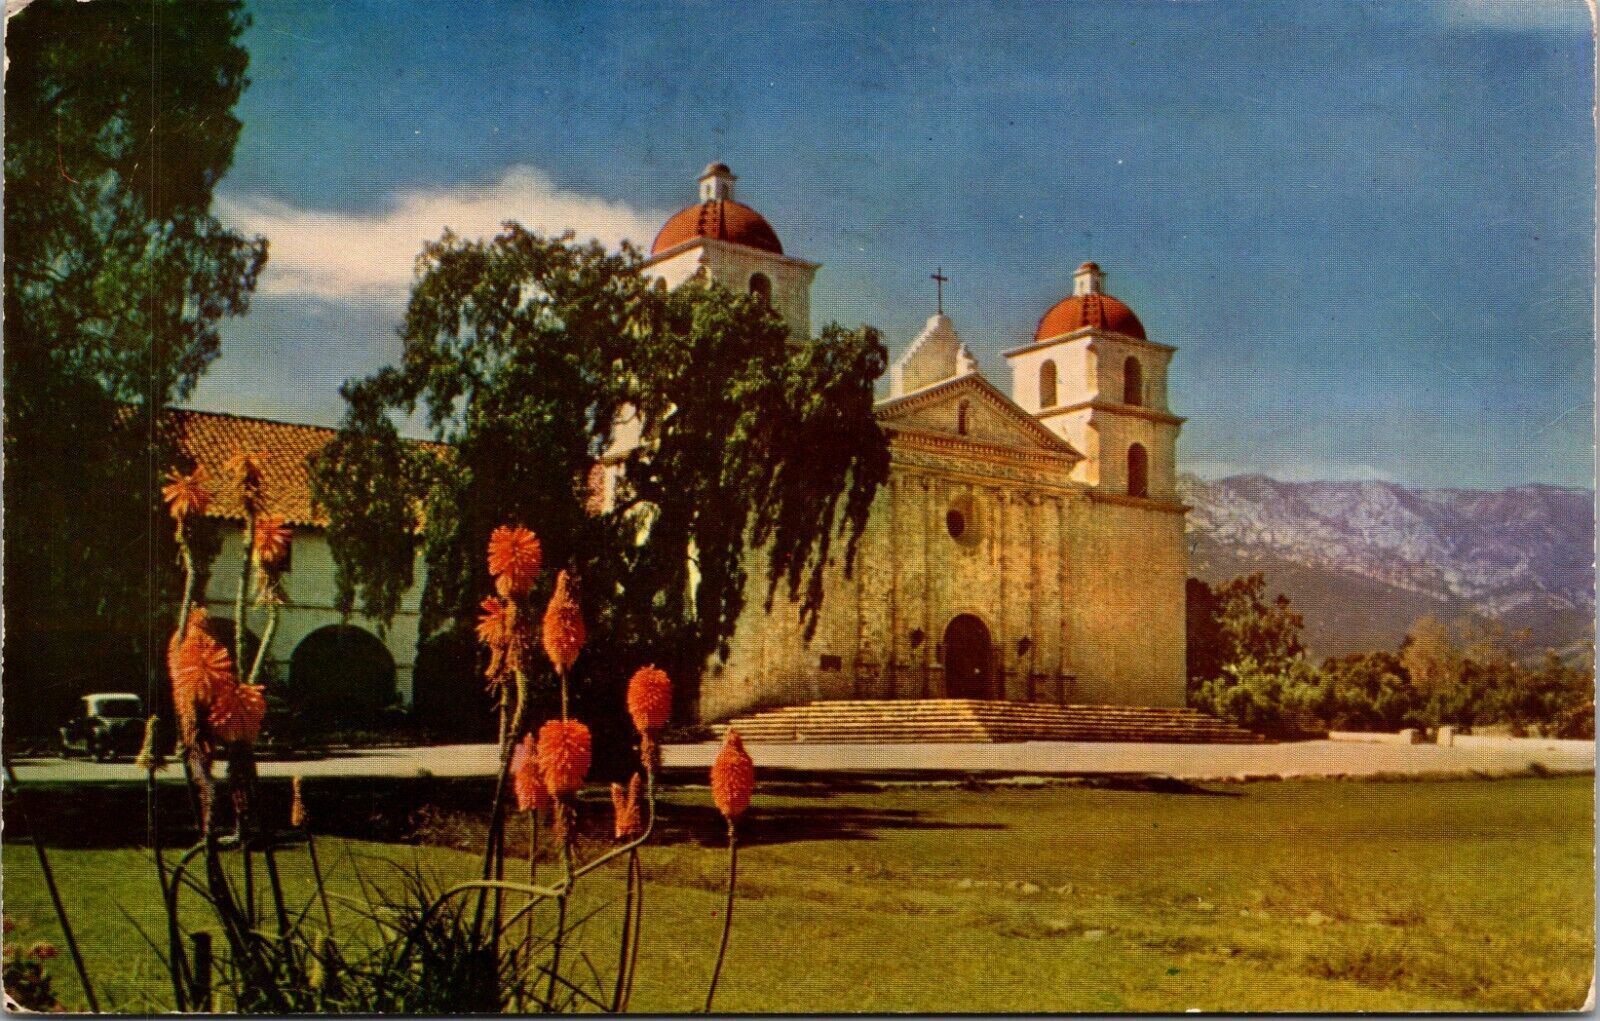 Santa Barbara, CA, Mission Santa Barbara, Unused Chrome Vintage Postcard